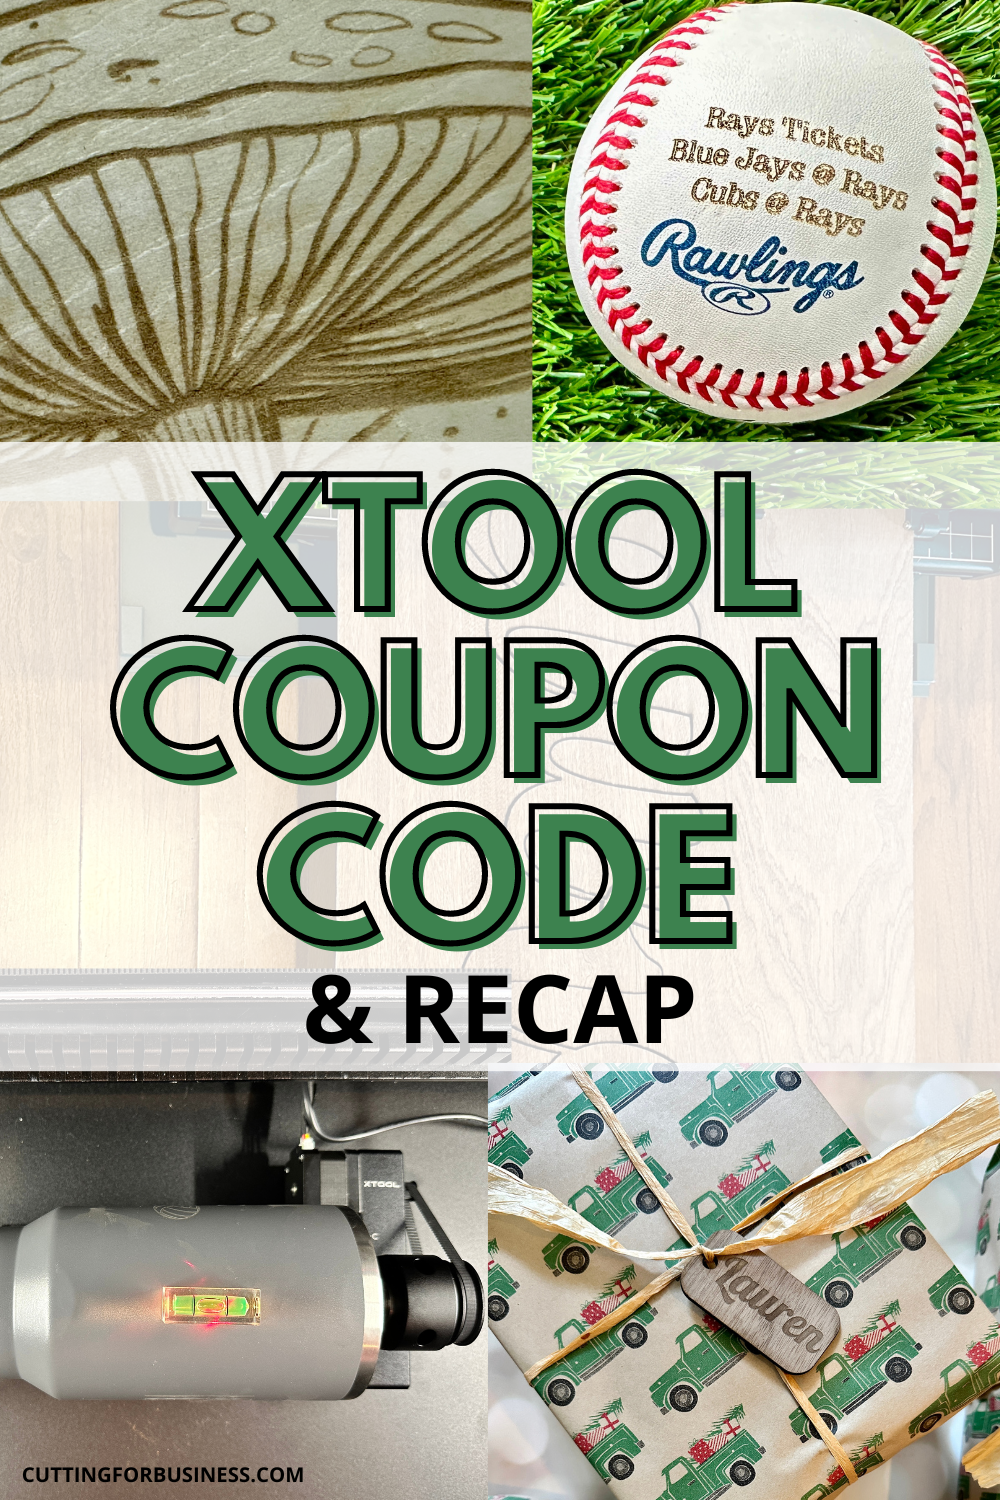 xTool Coupon Code & Recap - cuttingforbusiness.com.